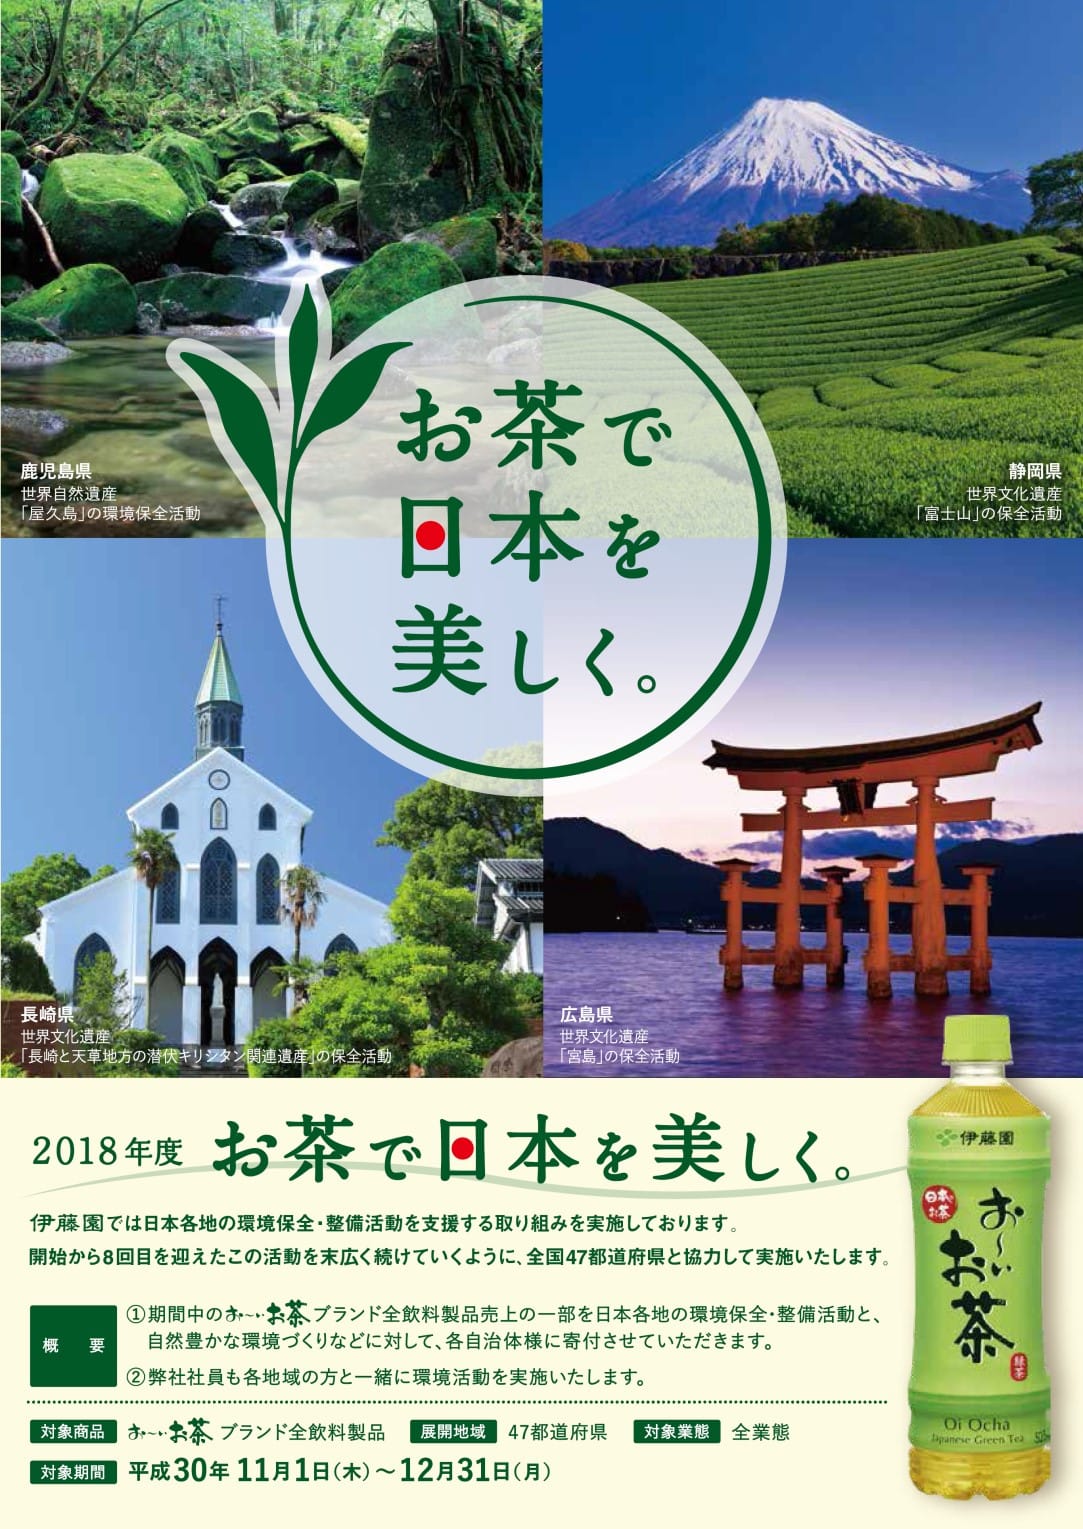 「『お茶で日本を美しく。』プロジェクト」による環境美化活動